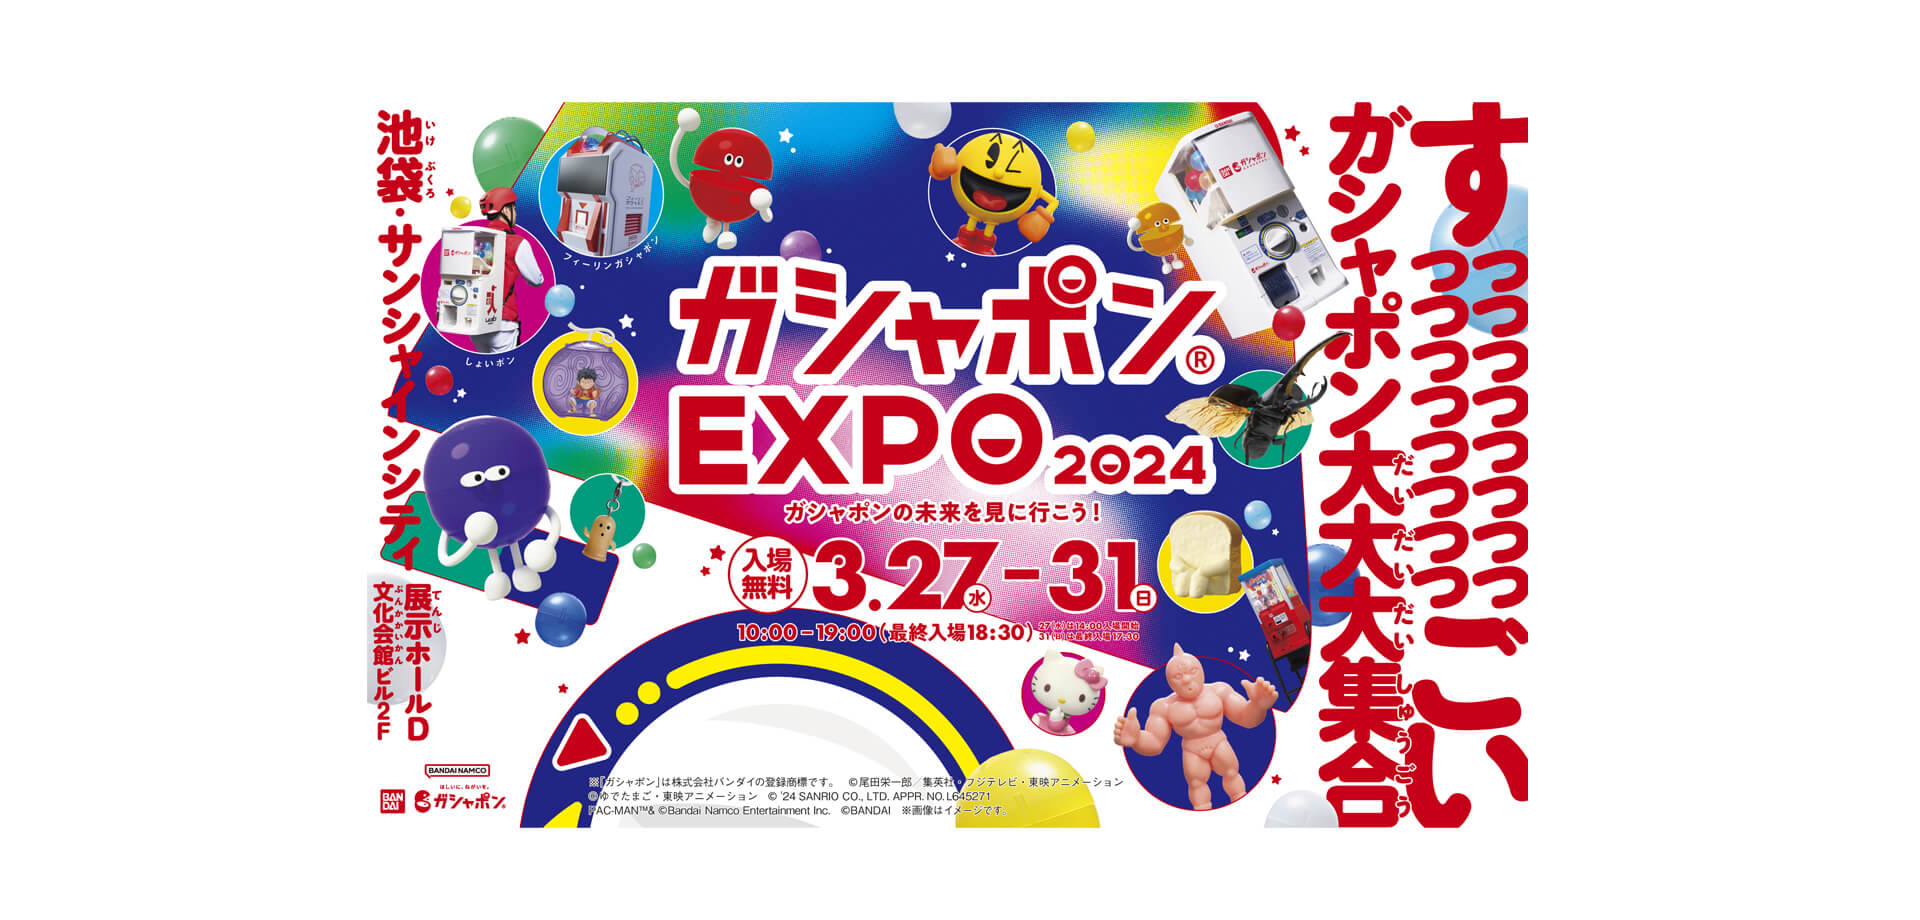 ガシャポン(R)EXPO 2024 バナー